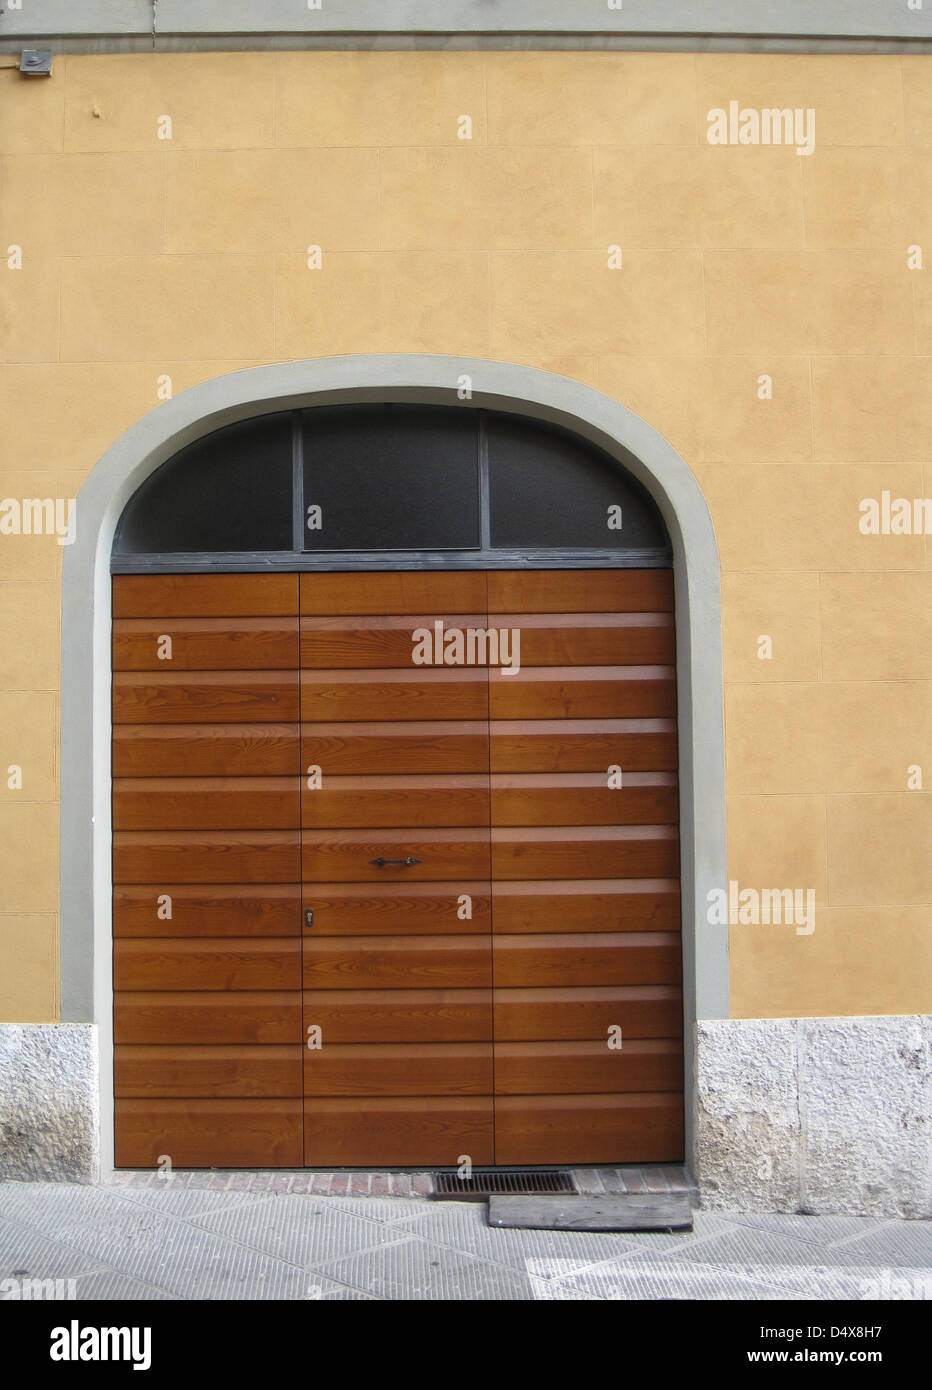 Rayé, contemporain, porte de garage en bois sur une maison de stuc jaune sur une rue étroite à Sienne, Toscane, Italie Banque D'Images